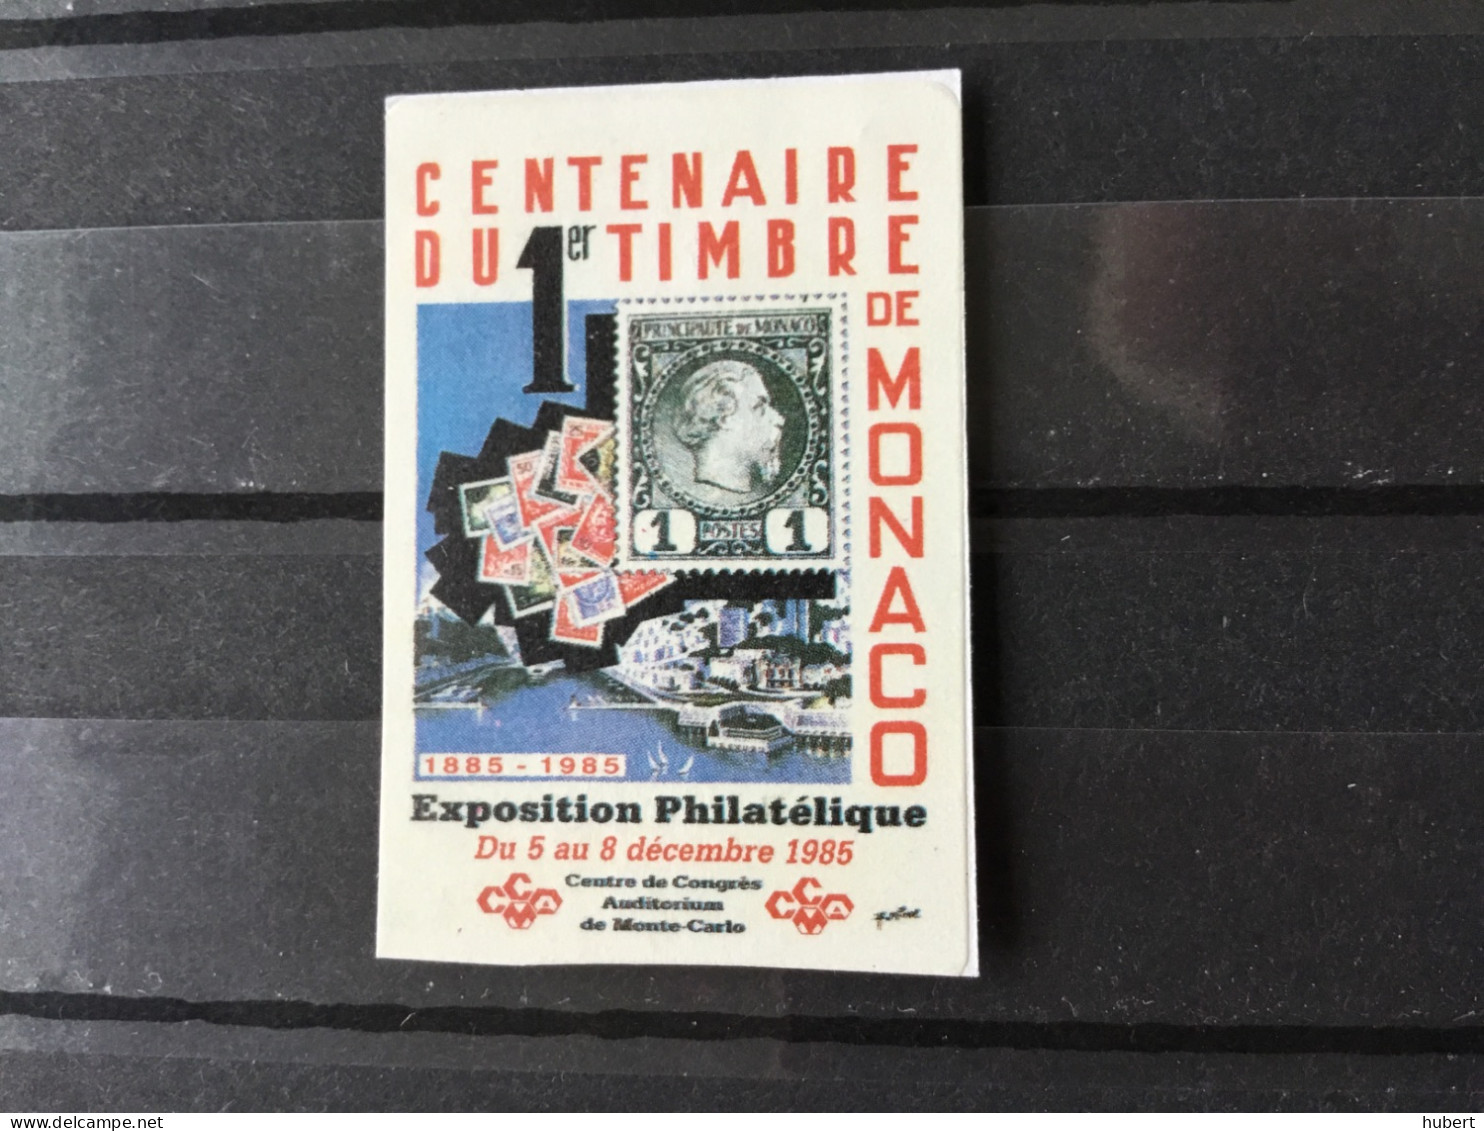 Vignette Exposition Philatélique 1985 ,centenaire Du 1 Timbre De Monaco - Cinderellas